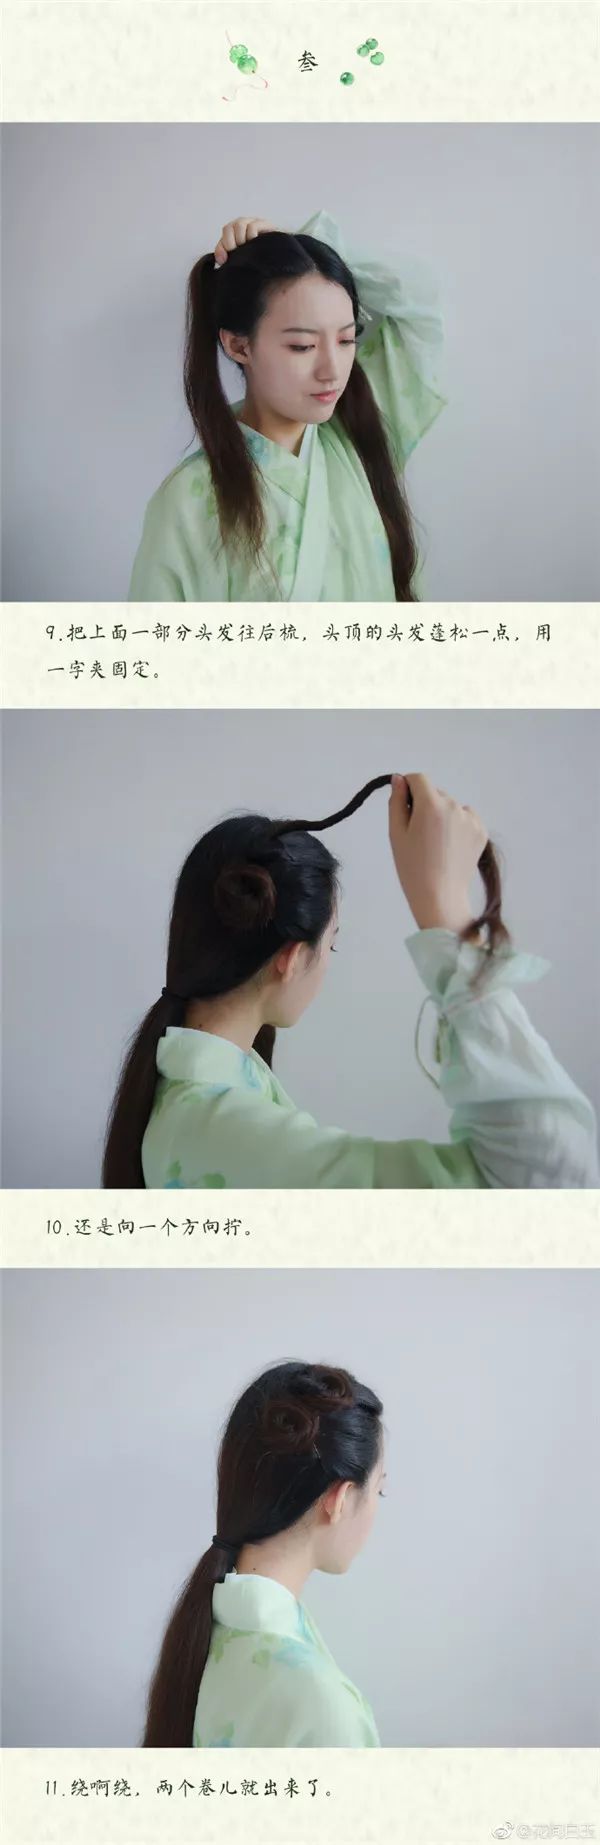 首页 教程   剧版赵灵儿发型,超级无敌少女风,可日常可拍照, 可以搭配